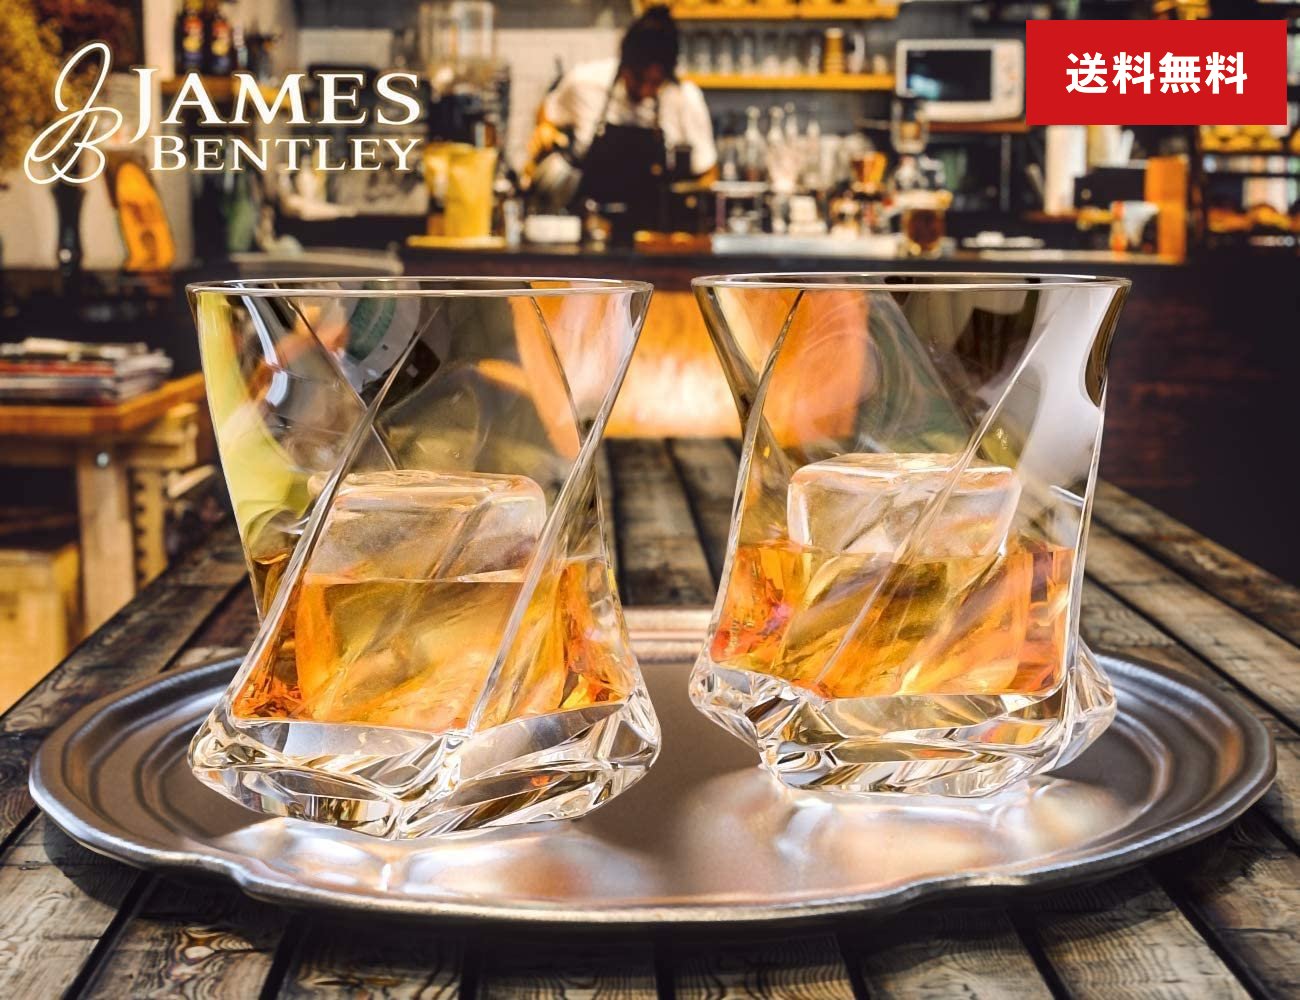 【 ウイスキー グラス セット ツイスト型 製氷皿 付き】ジェームスベントレー James Bentley STAR ペア ロックグラス バーボン ブランデー スコッチ おしゃれ ギフト プレゼントに 正規輸入品